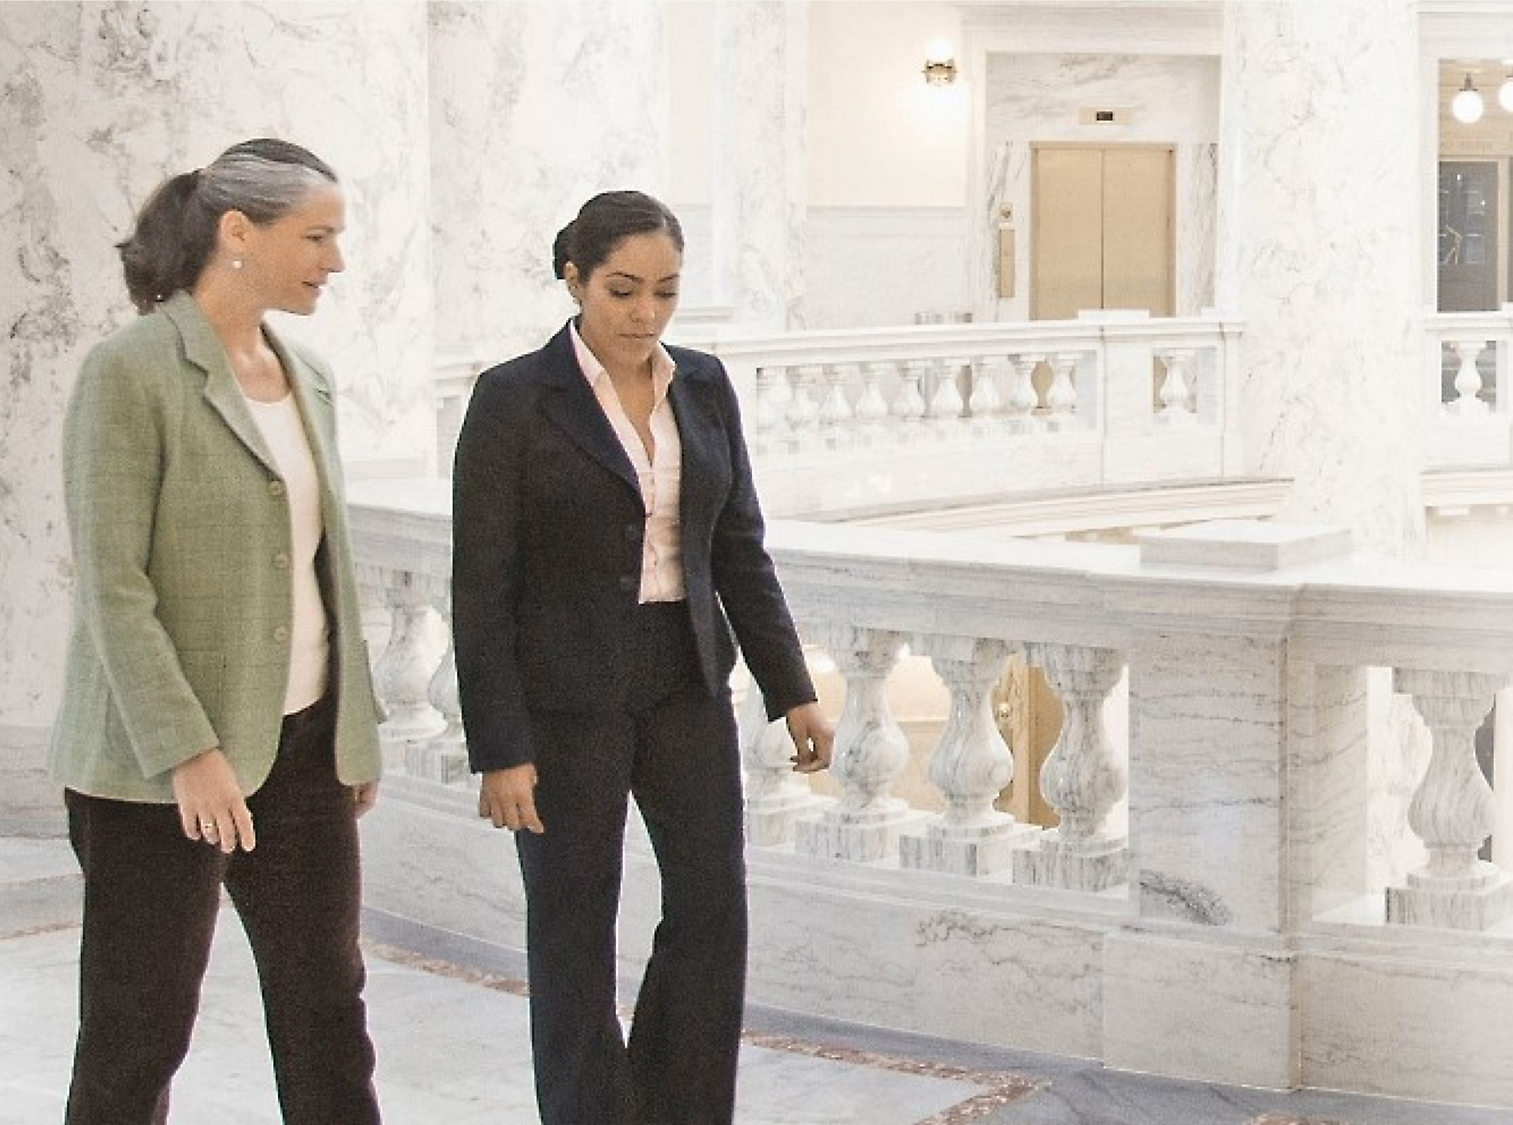 飾り付けられた手すりを背景にした大理石のホール内を歩きながら会話している 2 人の女性。